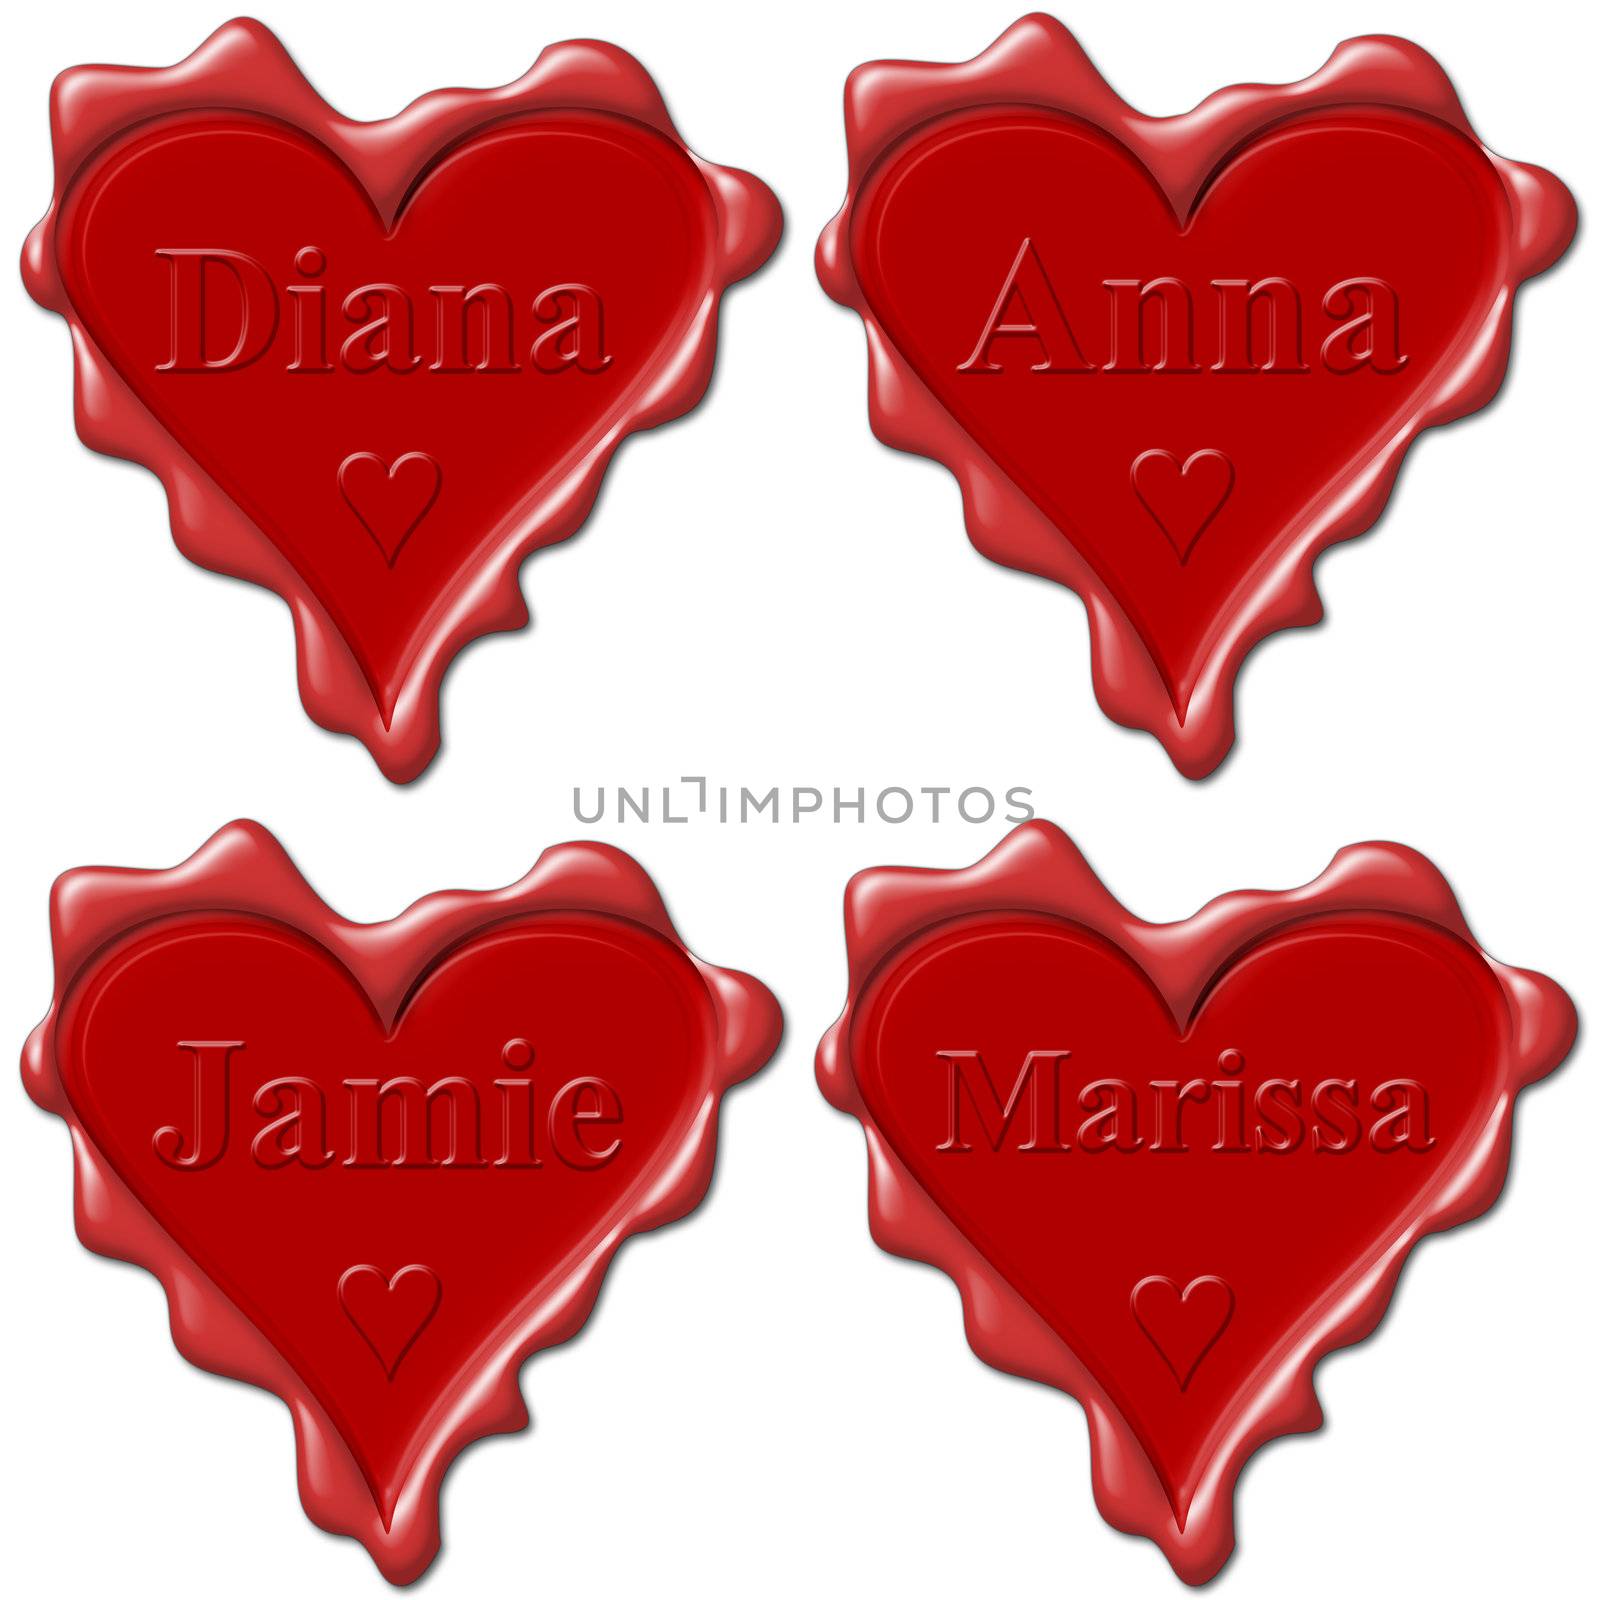 Valentine love hearts with names: Diana, Anna, Jamie, Marissa by mozzyb